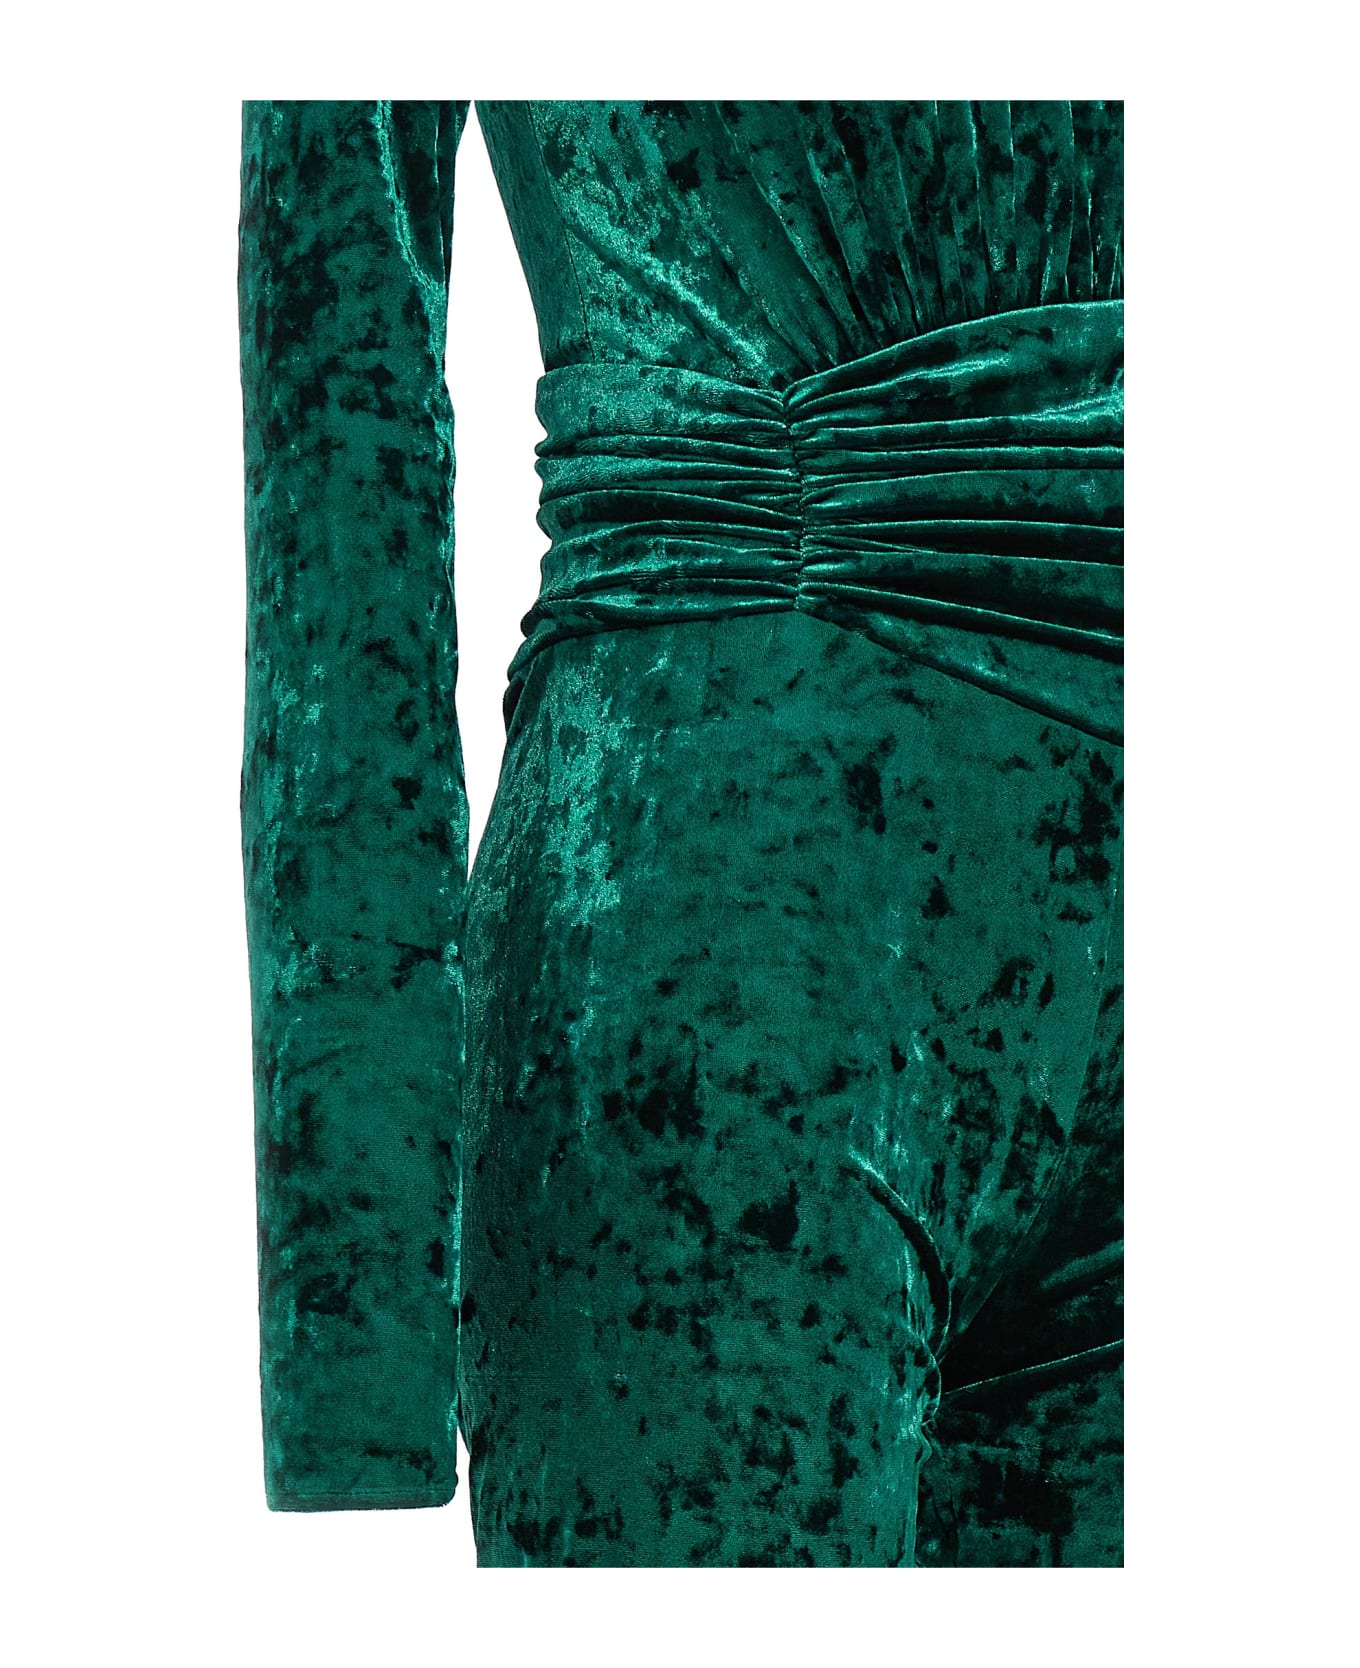 Alexandre Vauthier Velvet Suit - Green ジャンプスーツ